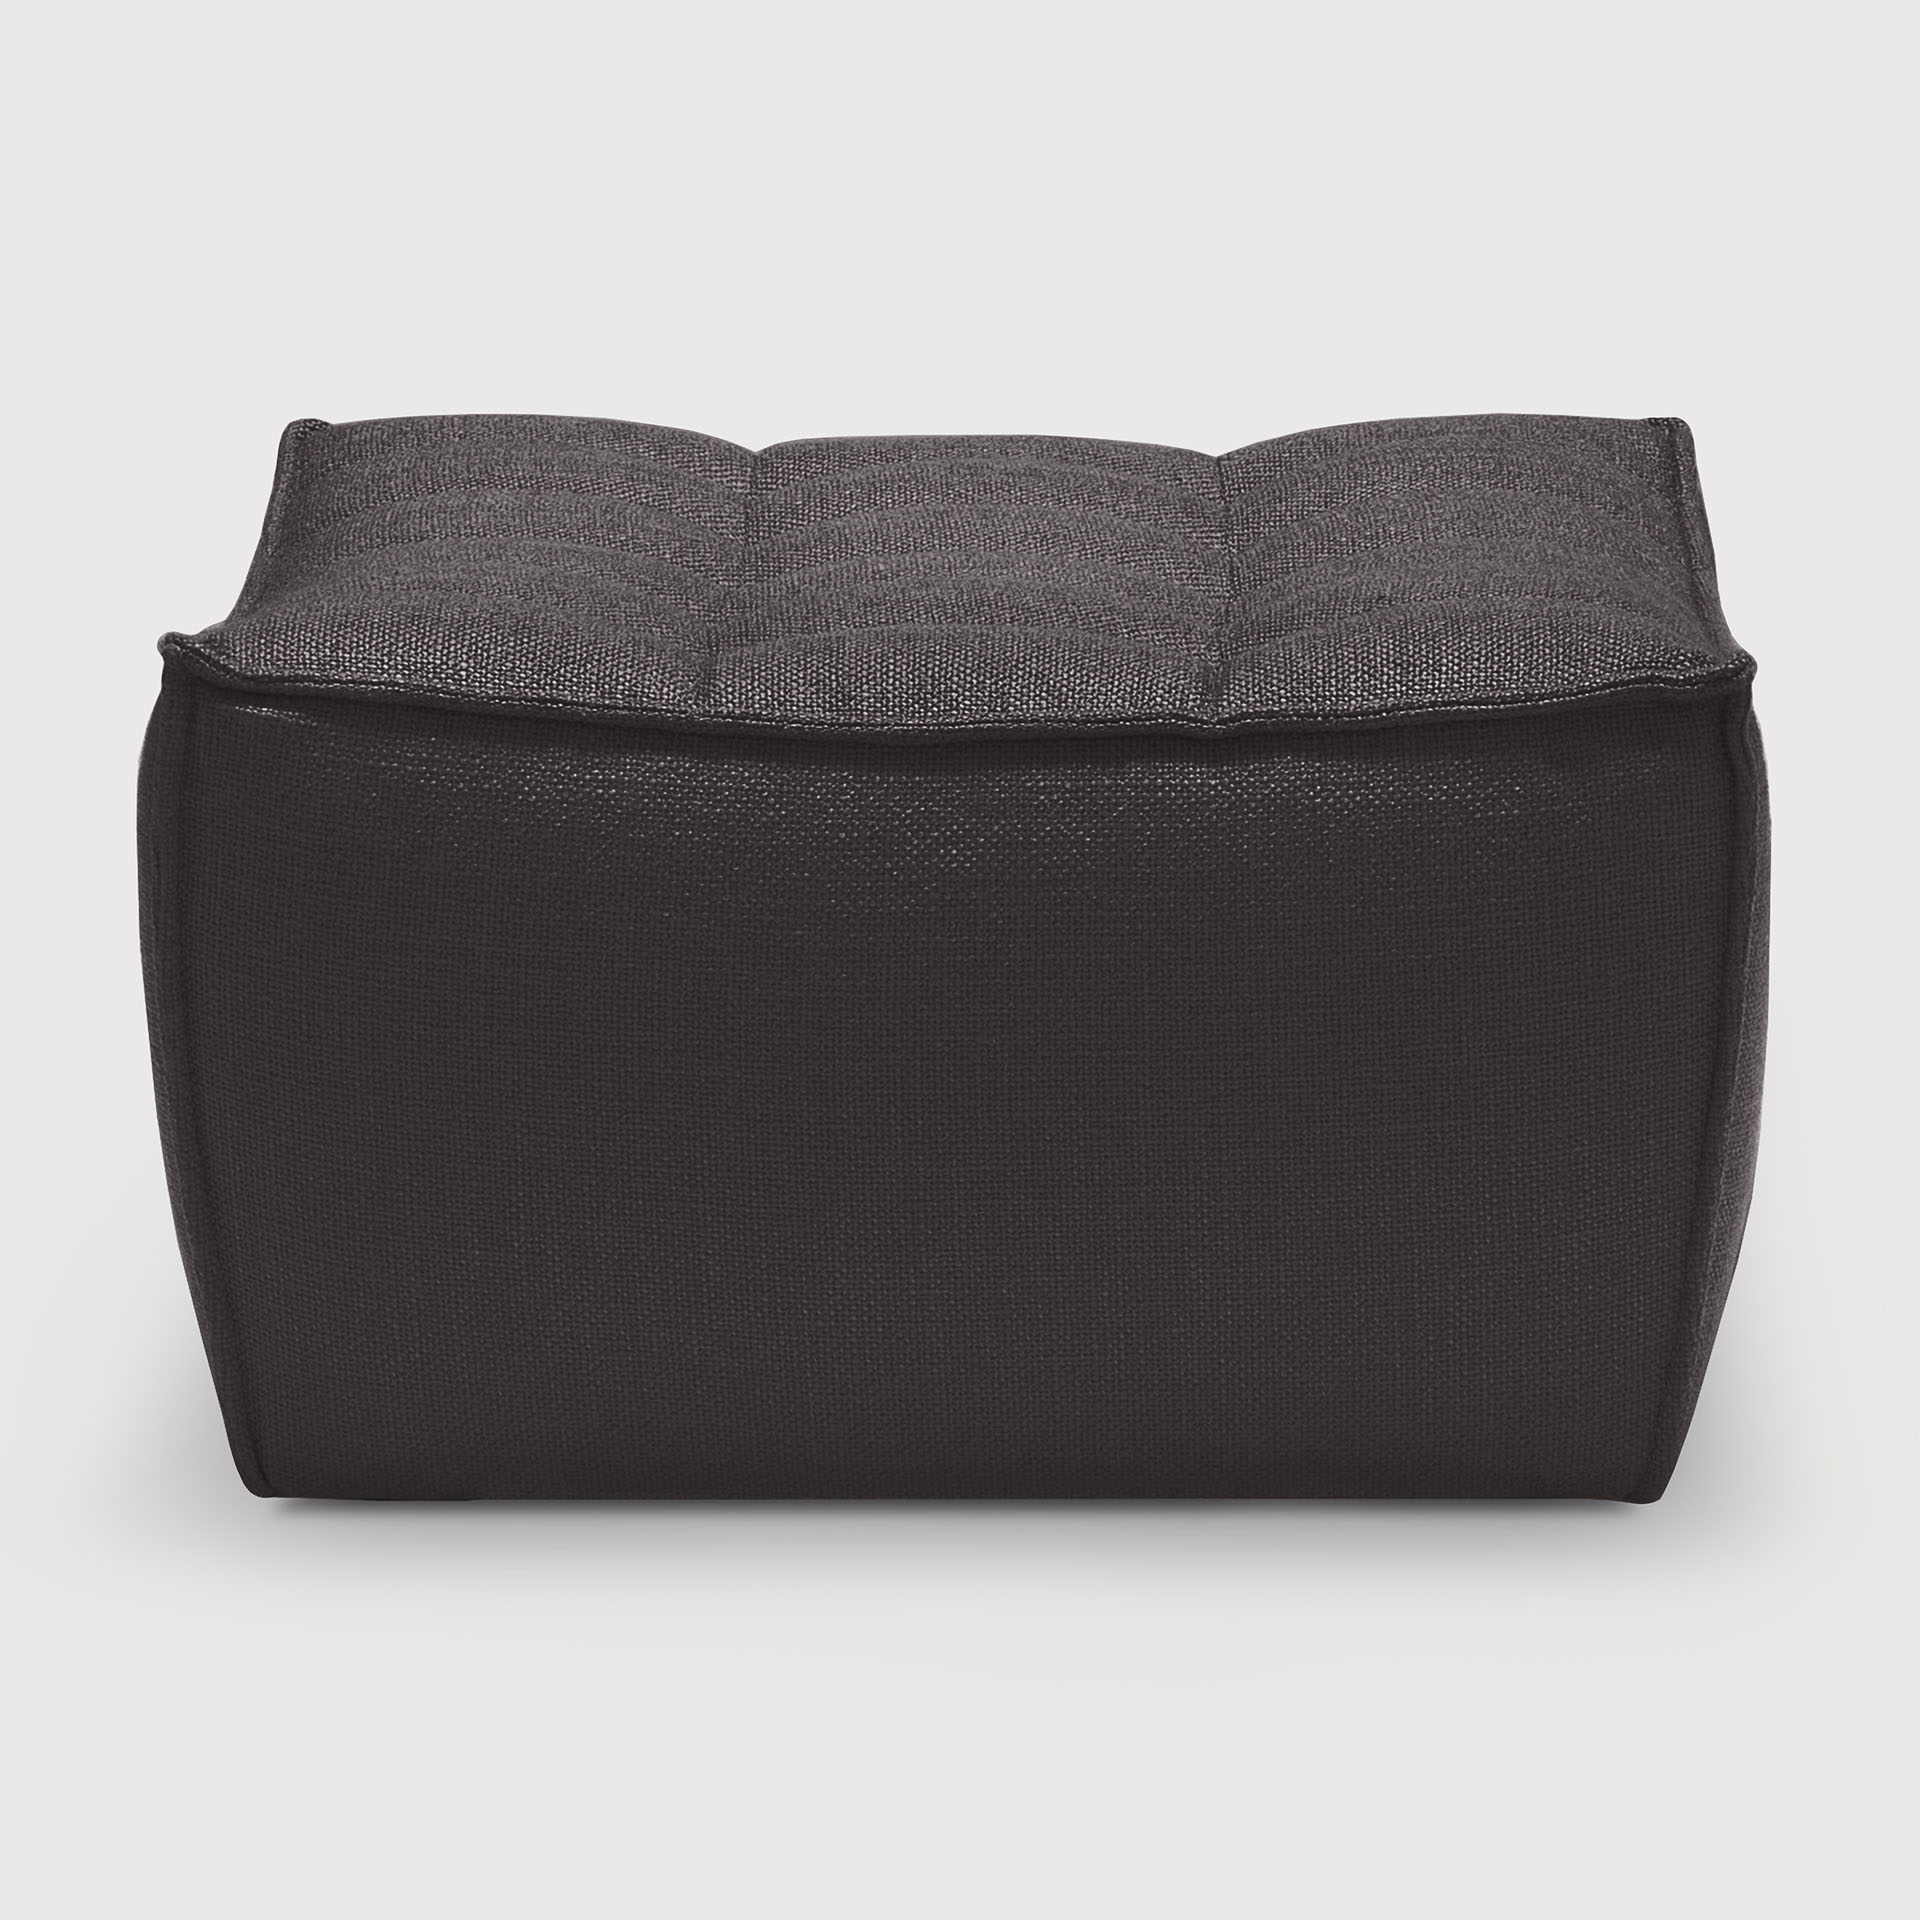 [20228*] N701 sofa - footstool  (Dark grey)